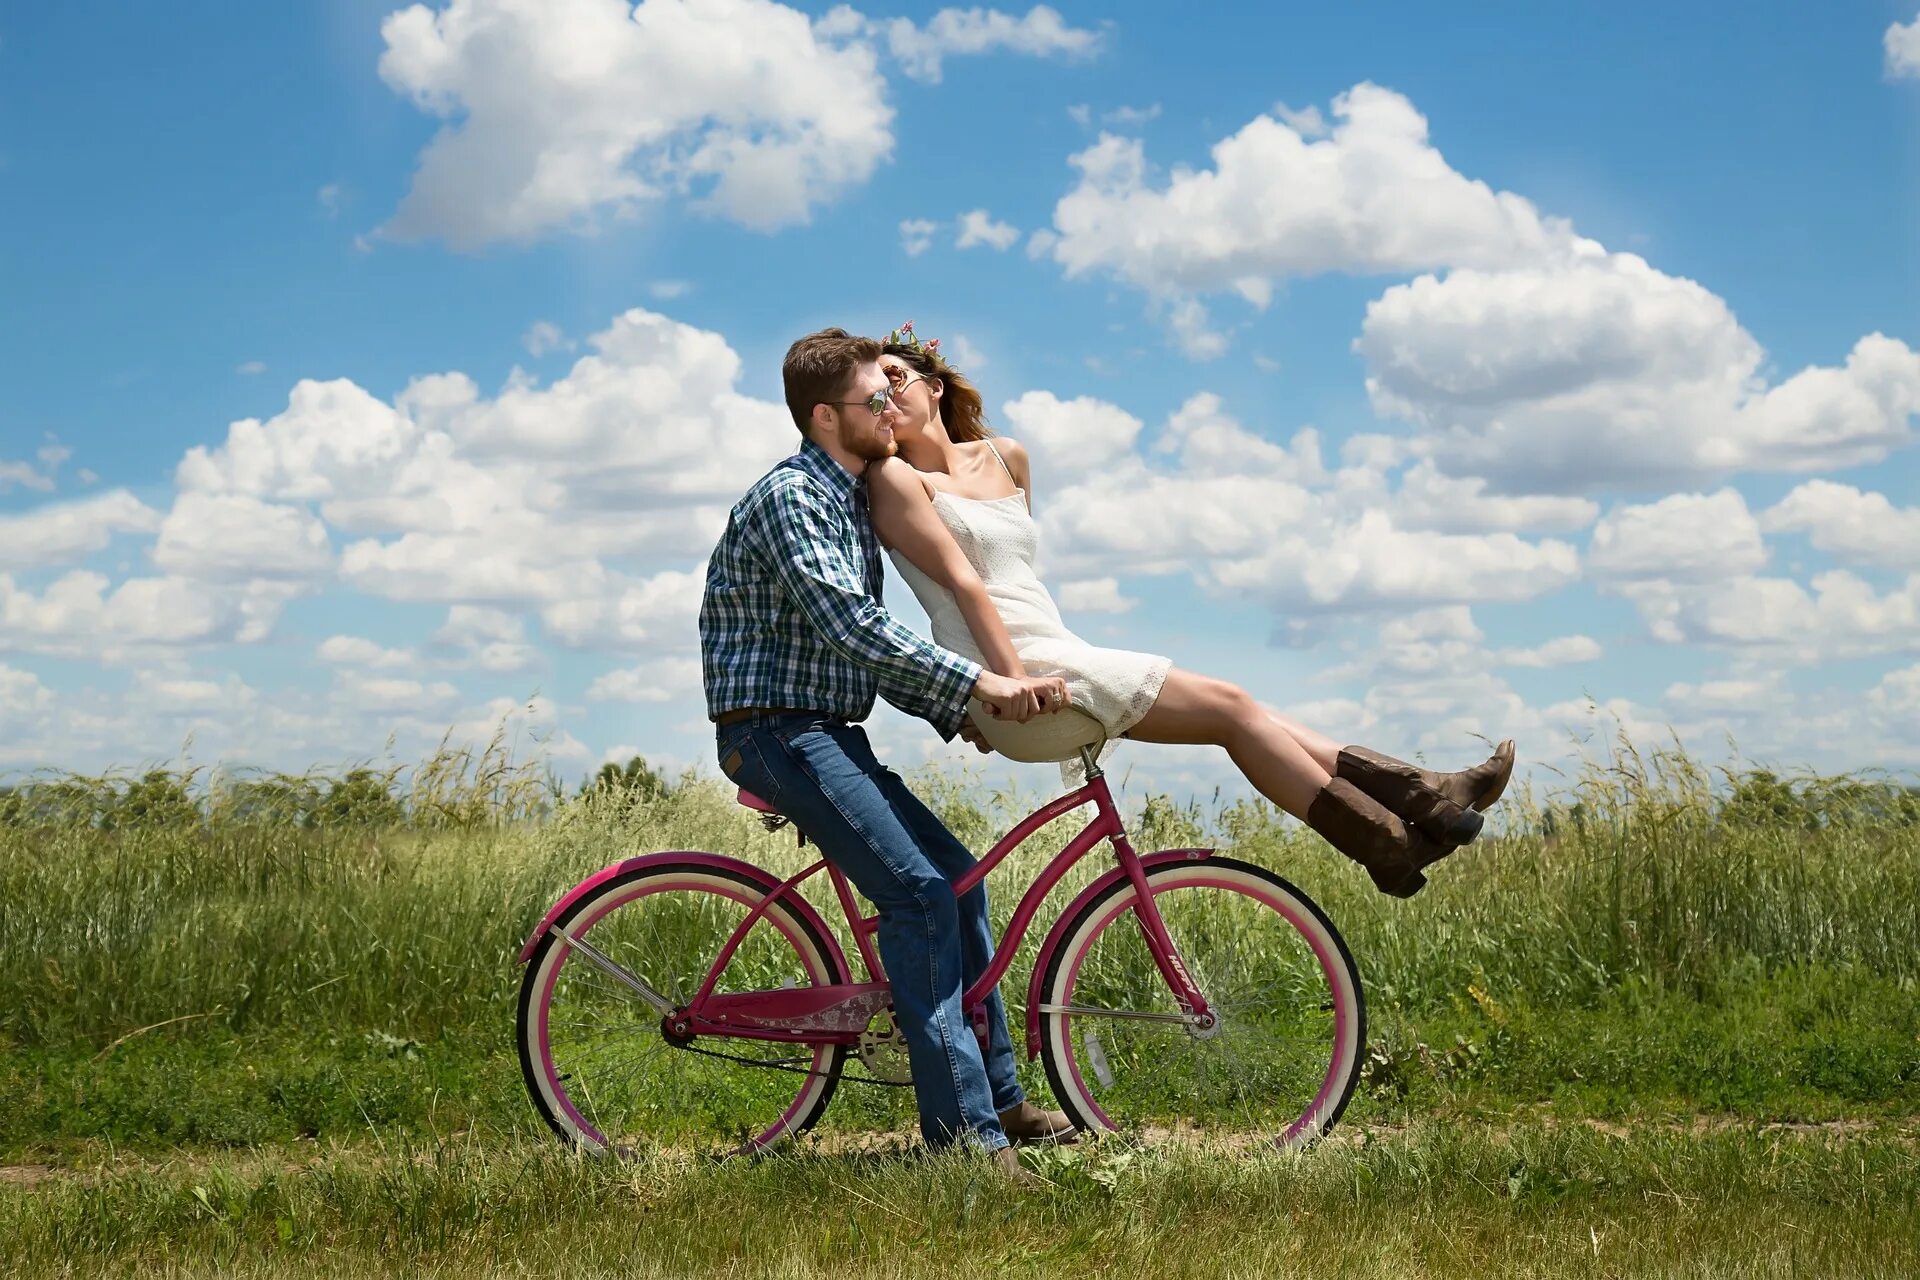 Взрослая счастливая жизнь. Девушка на велосипеде. Человек на велосипеде. Влюбленные на велосипеде. Парень с девушкой на велосипеде.